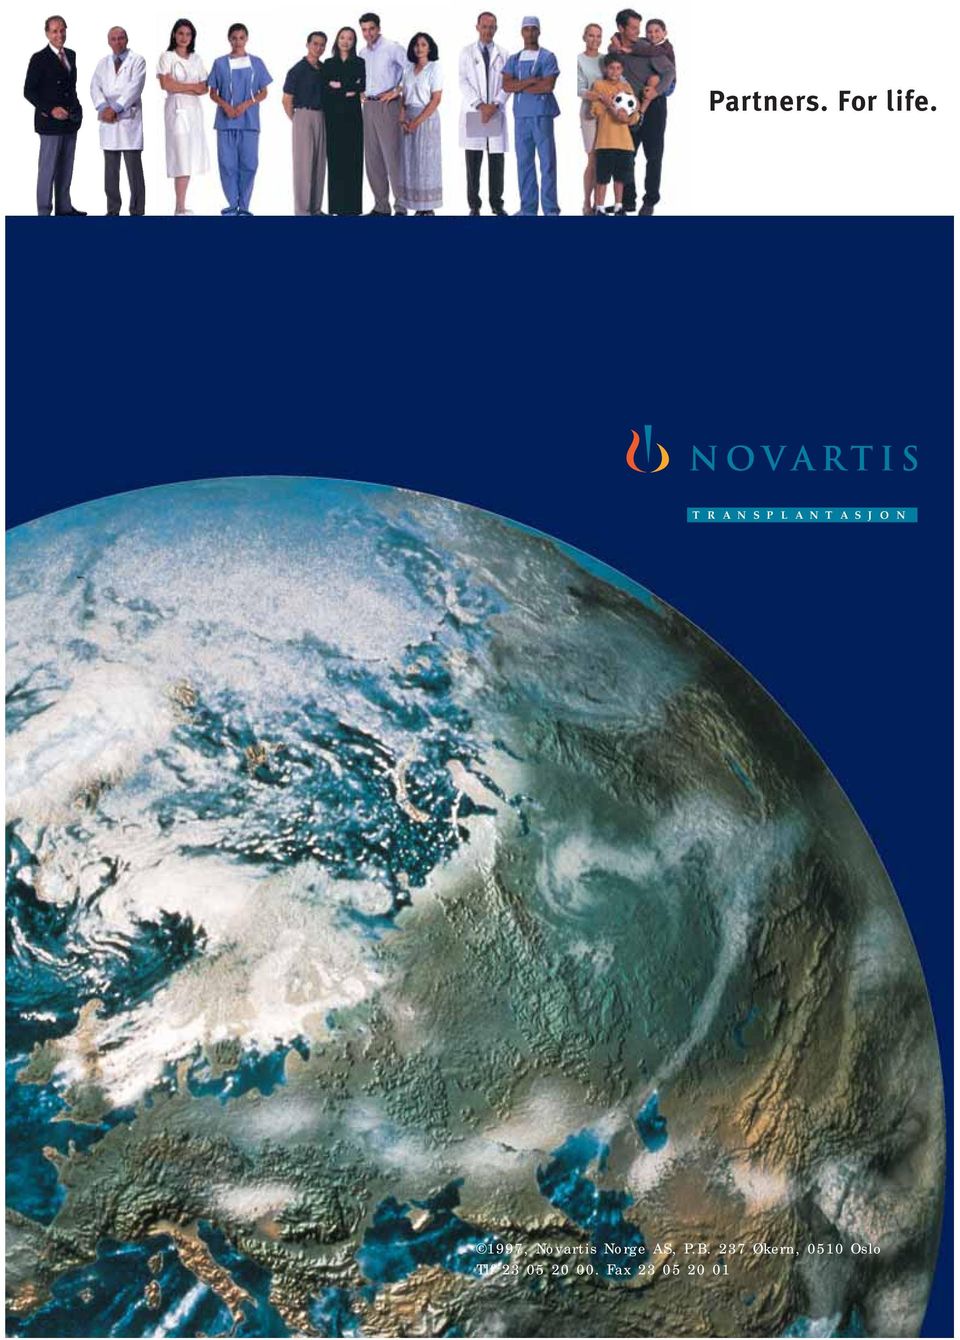 1997, Novartis Norge AS, P.B.